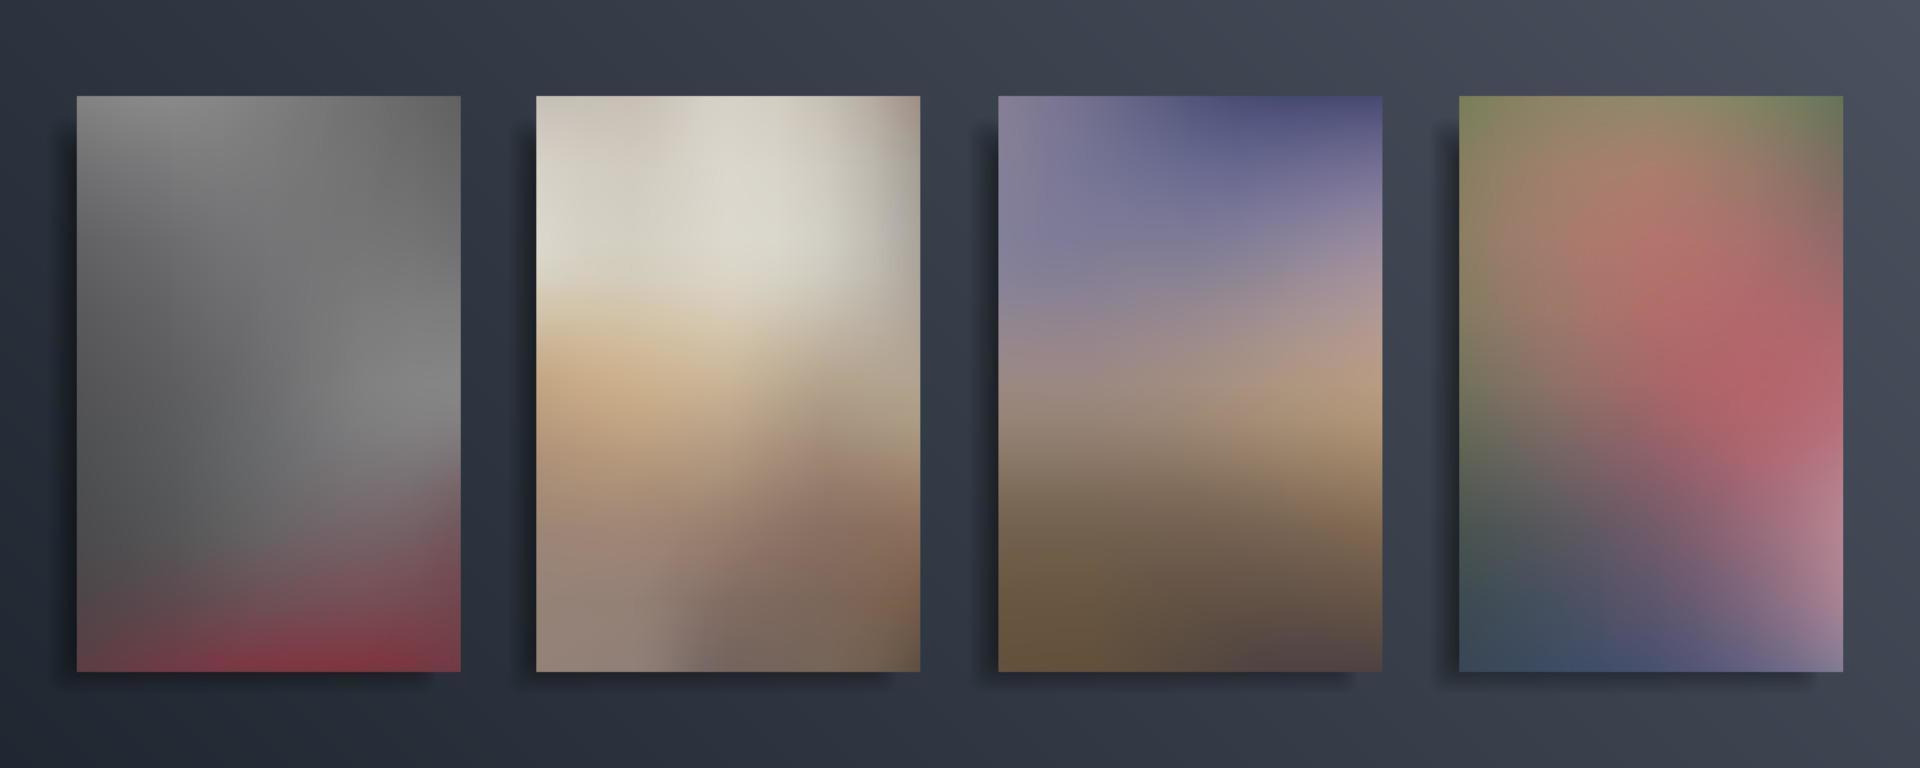 abstrakt lutning suddig bakgrund i mörk pastell Färg. vektor